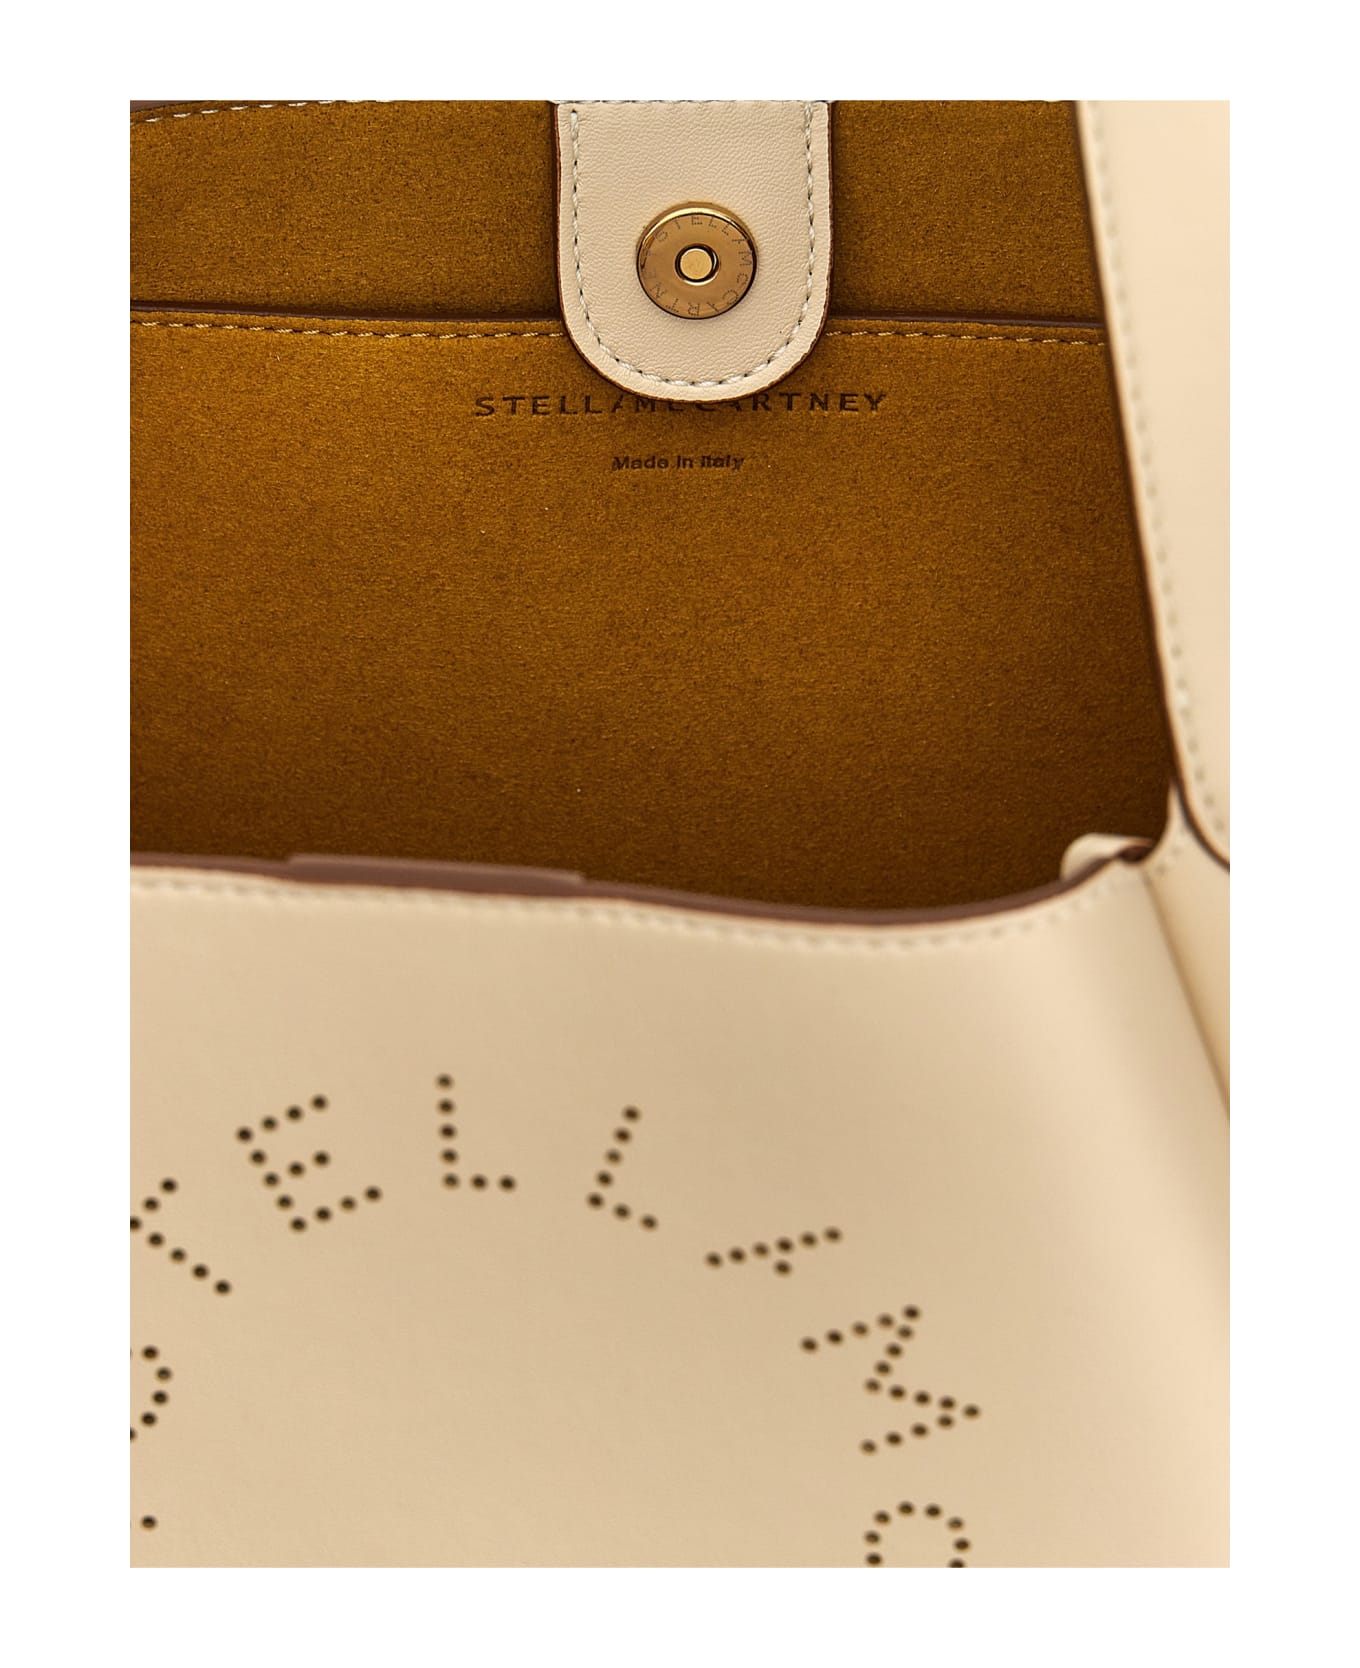 Stella McCartney 'logo' Handbag - White